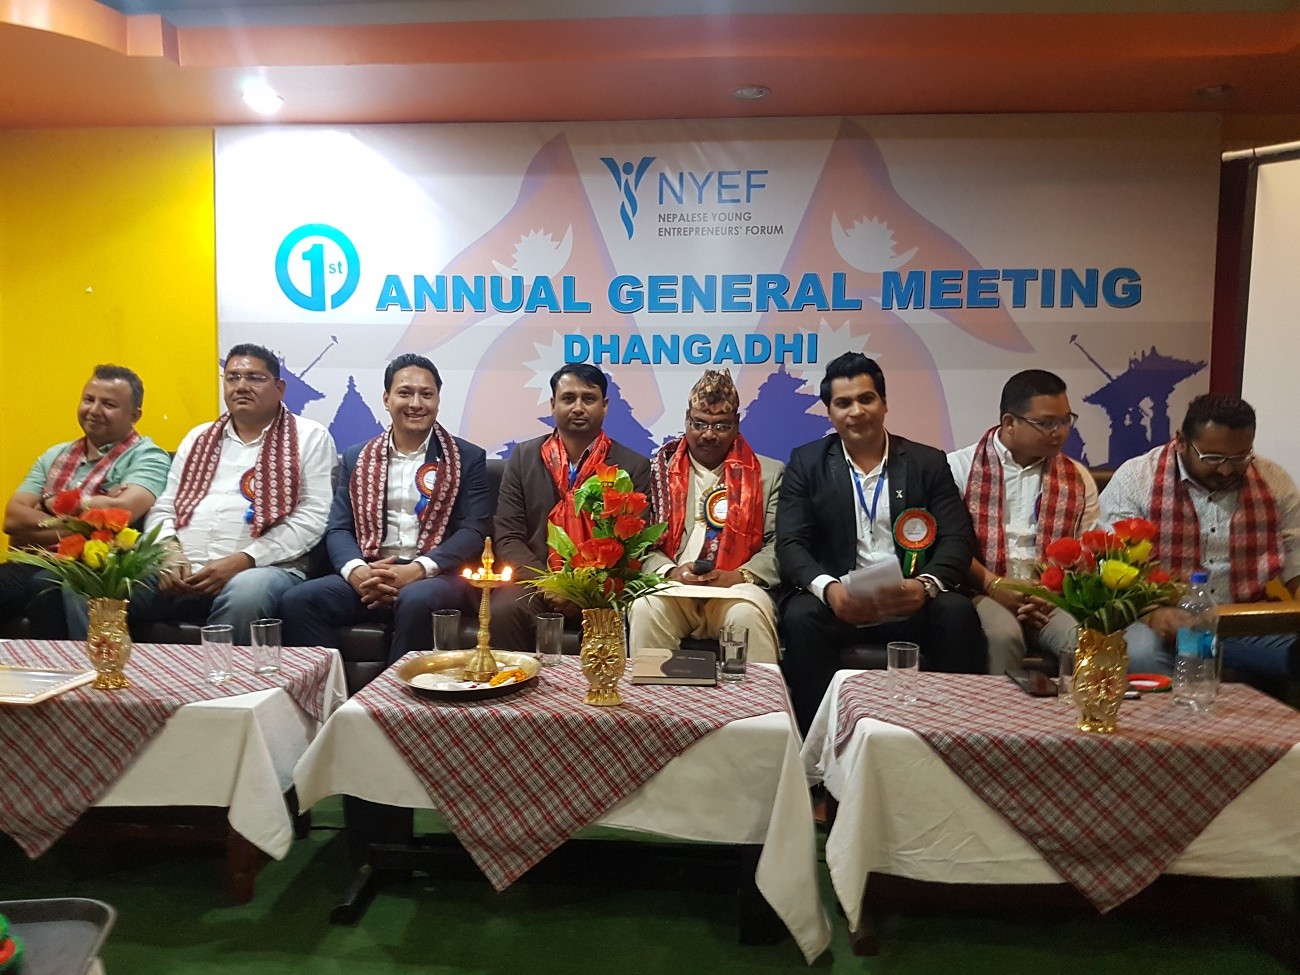 नेपाल युवा उद्यमी मञ्च धनगढी शाखाको अध्यक्षमा ठाकुर